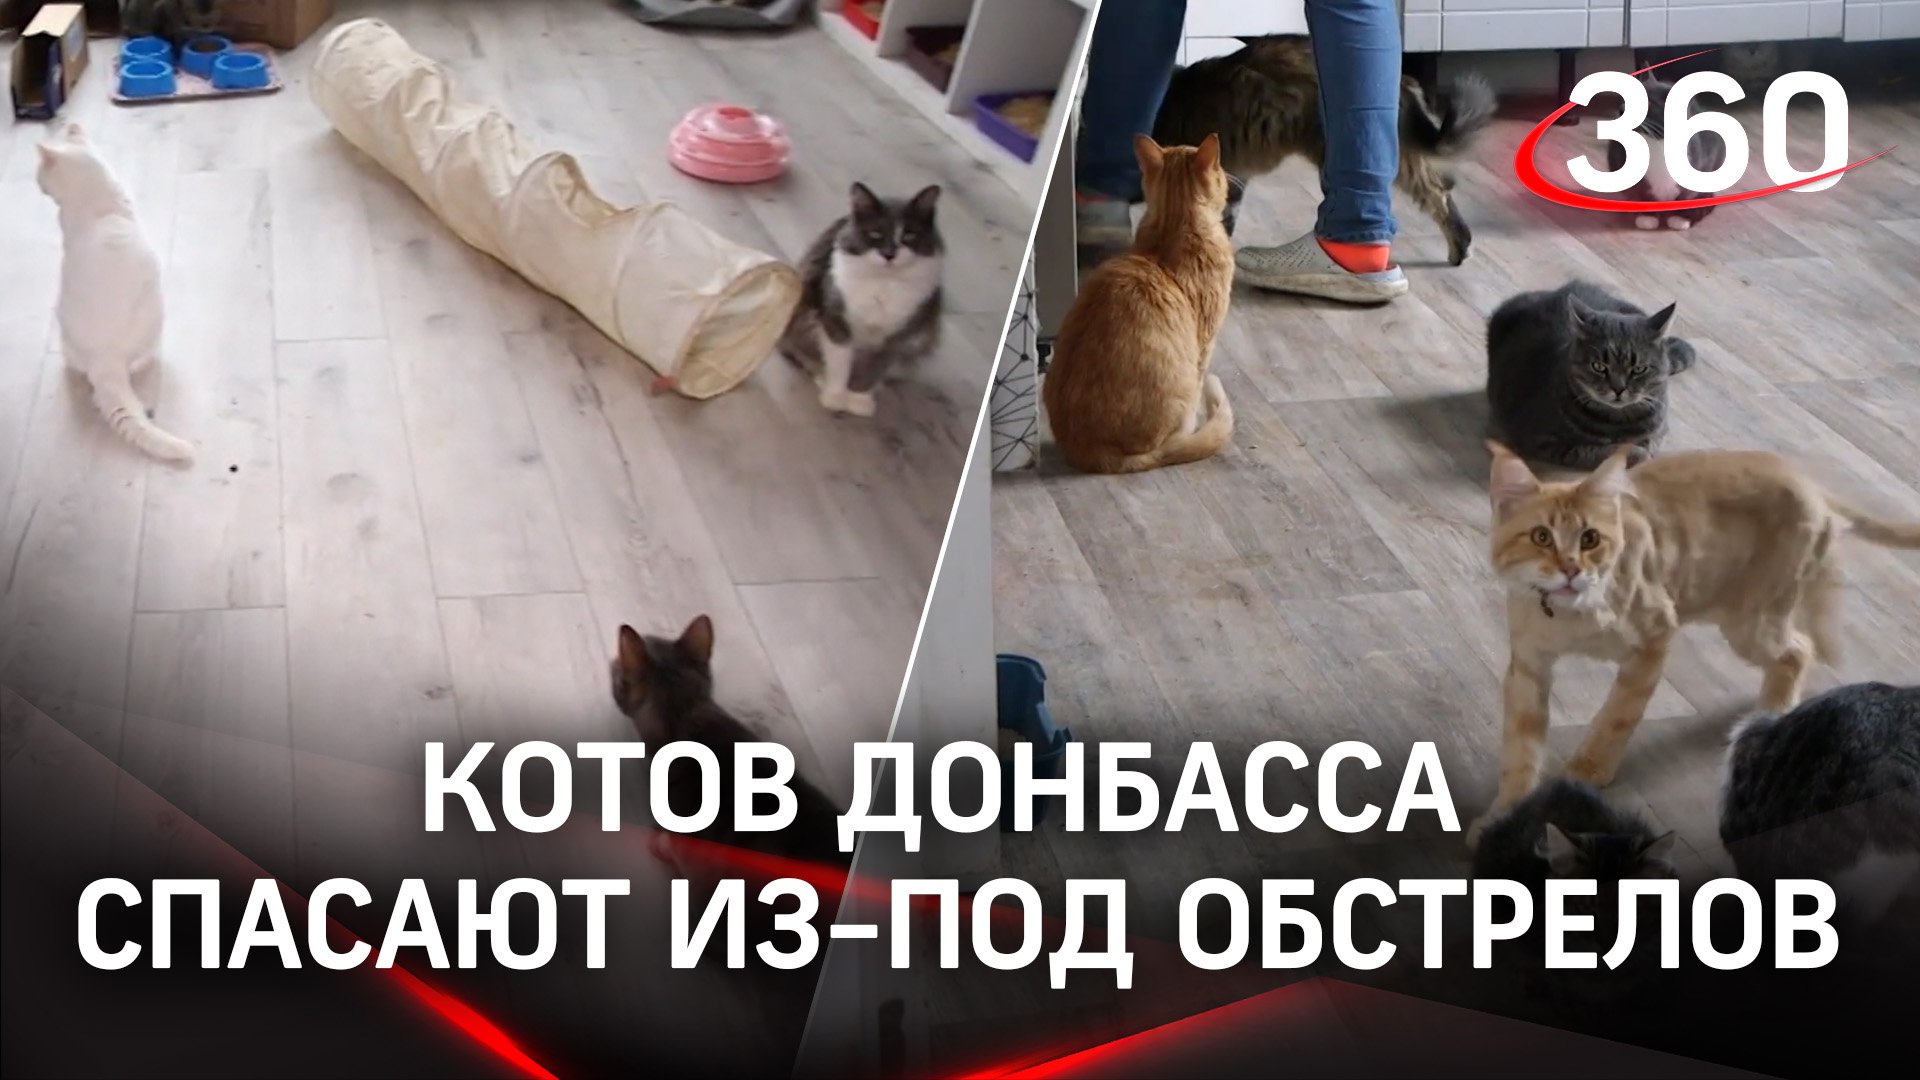 Котов Донбасса спасают из-под обстрелов и выхаживают в ростовском КОТЭдже